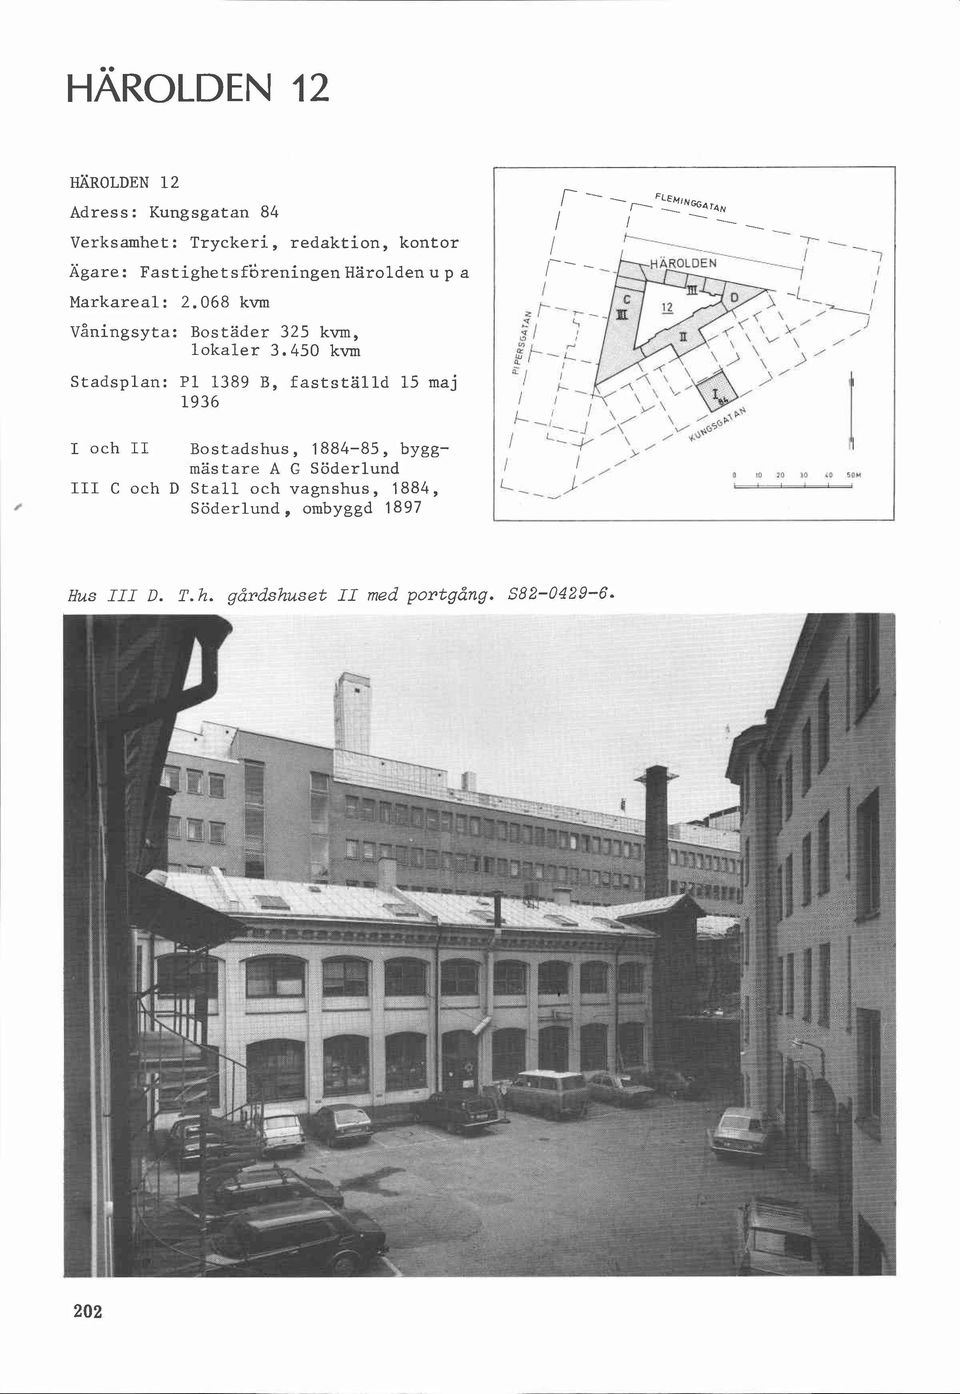 450 kvm Stadsplan: P1 1389 B, fastställd 15 maj 1936 I och II Bostadshus, 1884-85, byggmästare A